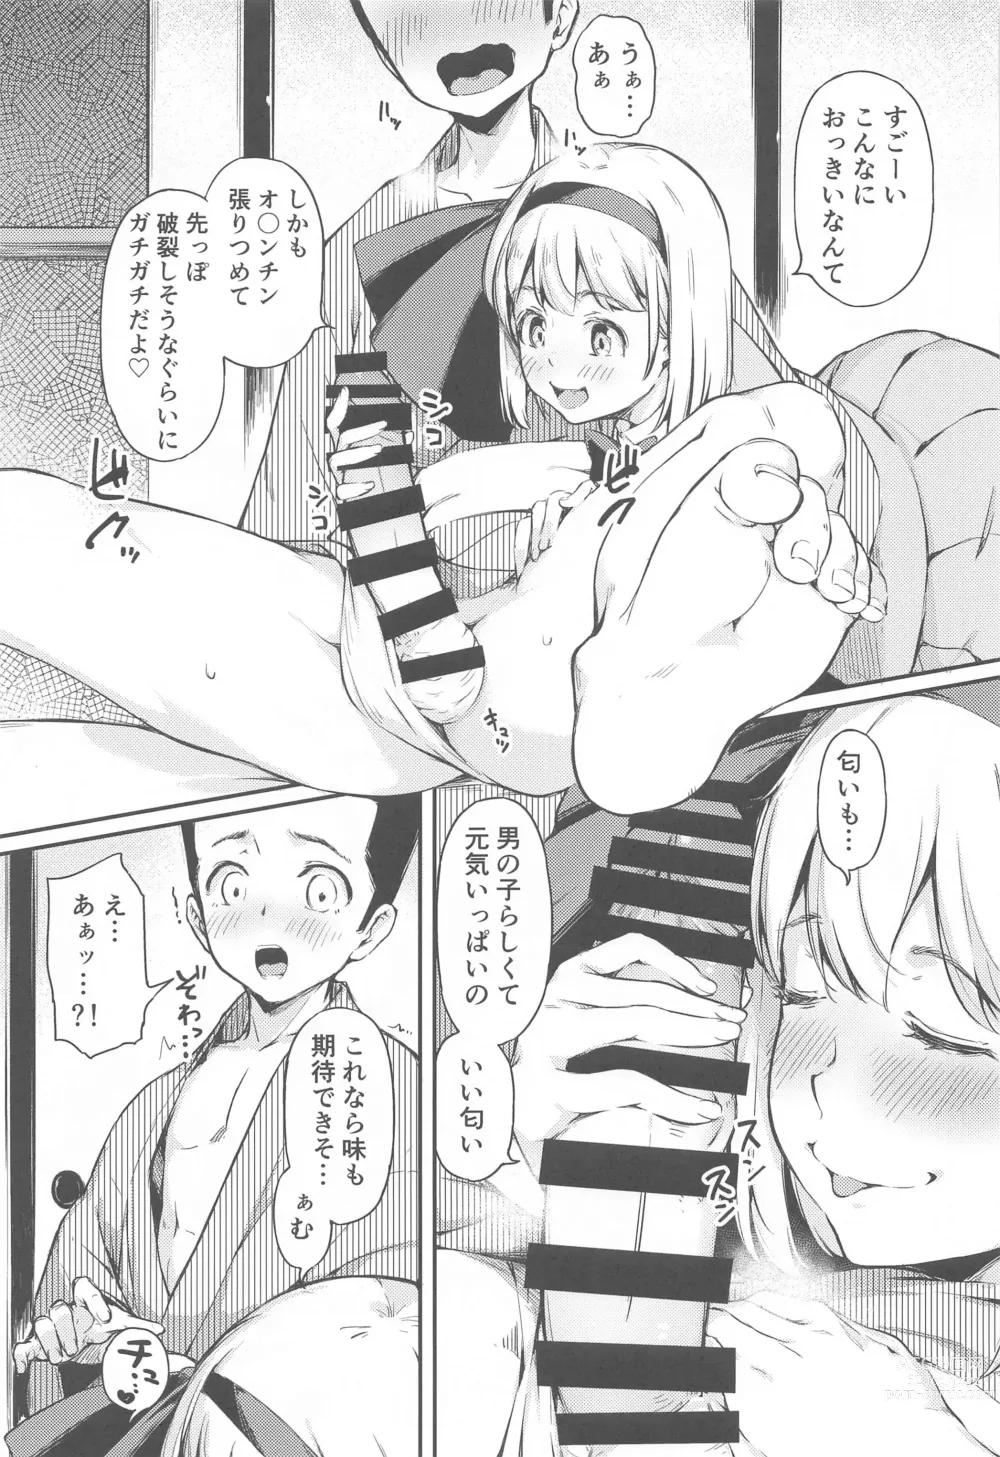 Page 6 of doujinshi Niwashi no Musume wa Minna ni Aisaretai.